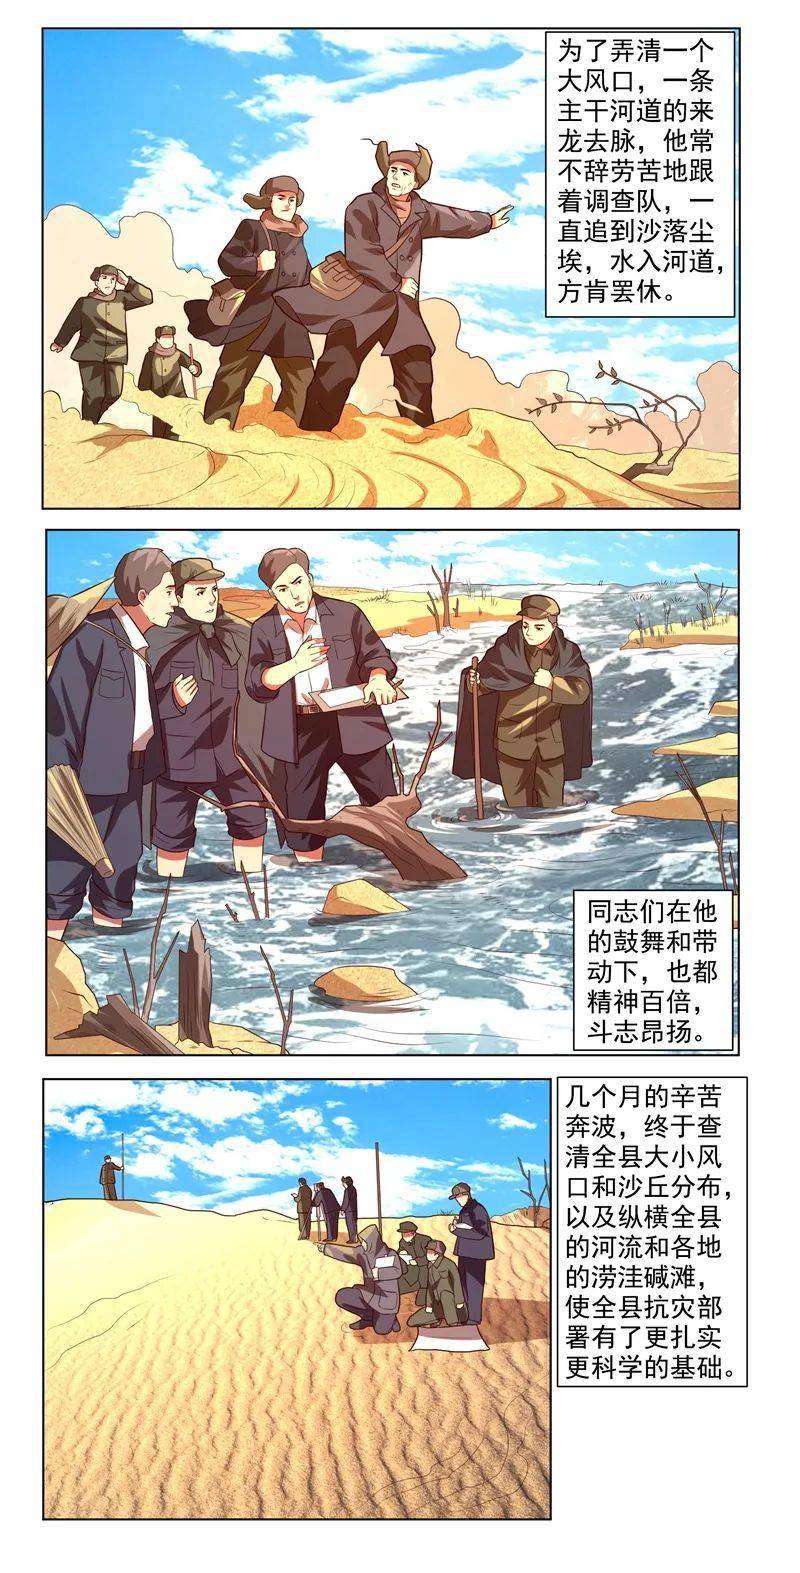 【学四史】漫画新中国史:焦裕禄